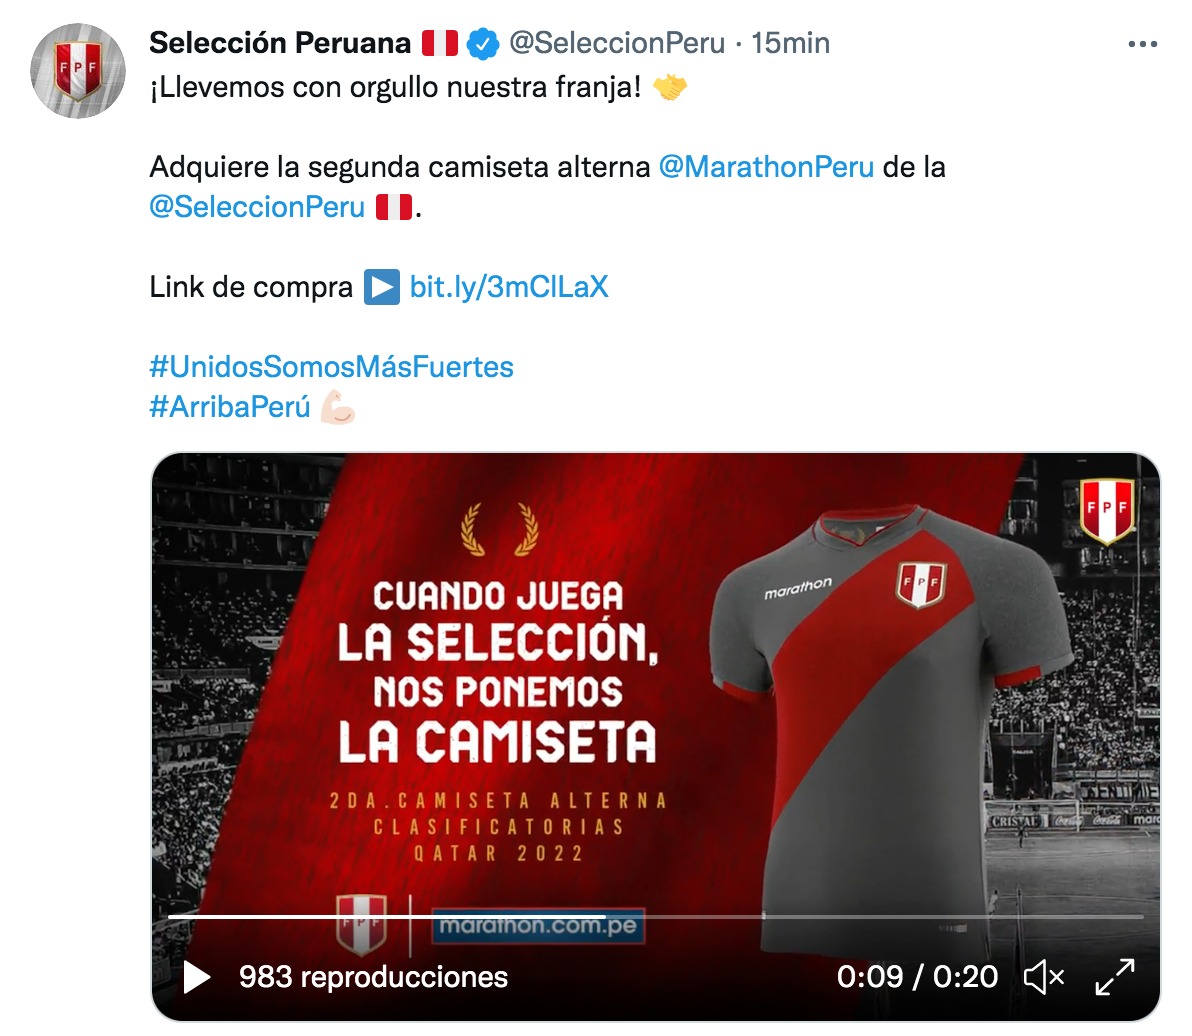 Esta es la publicación que hizo la selección peruana en Twitter.